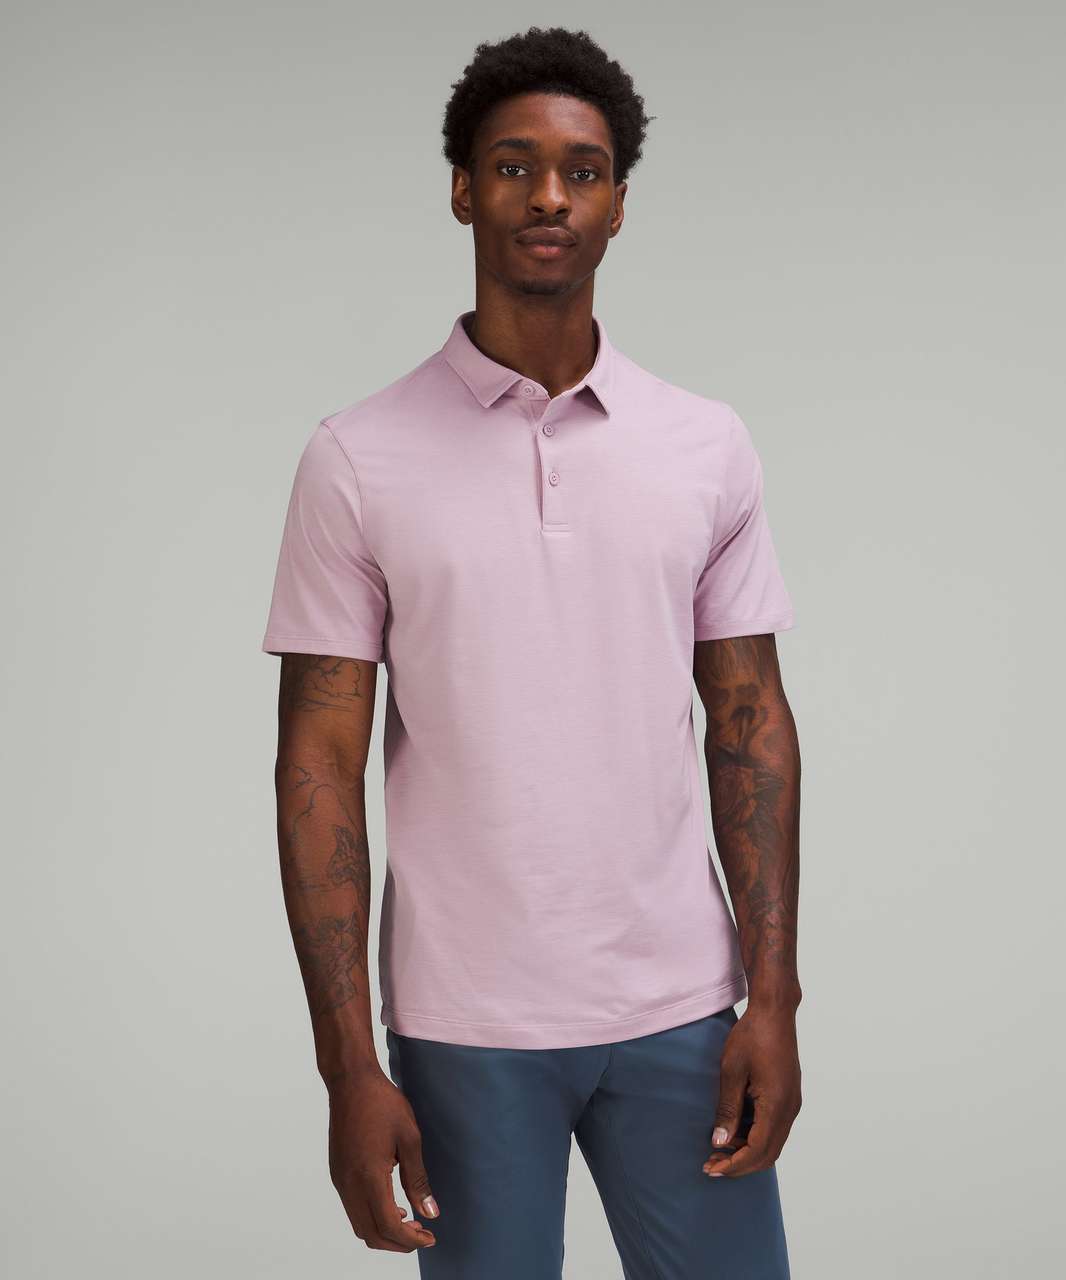 Lululemon Evolution Short Sleeve Polo Shirt In Pink Blossom